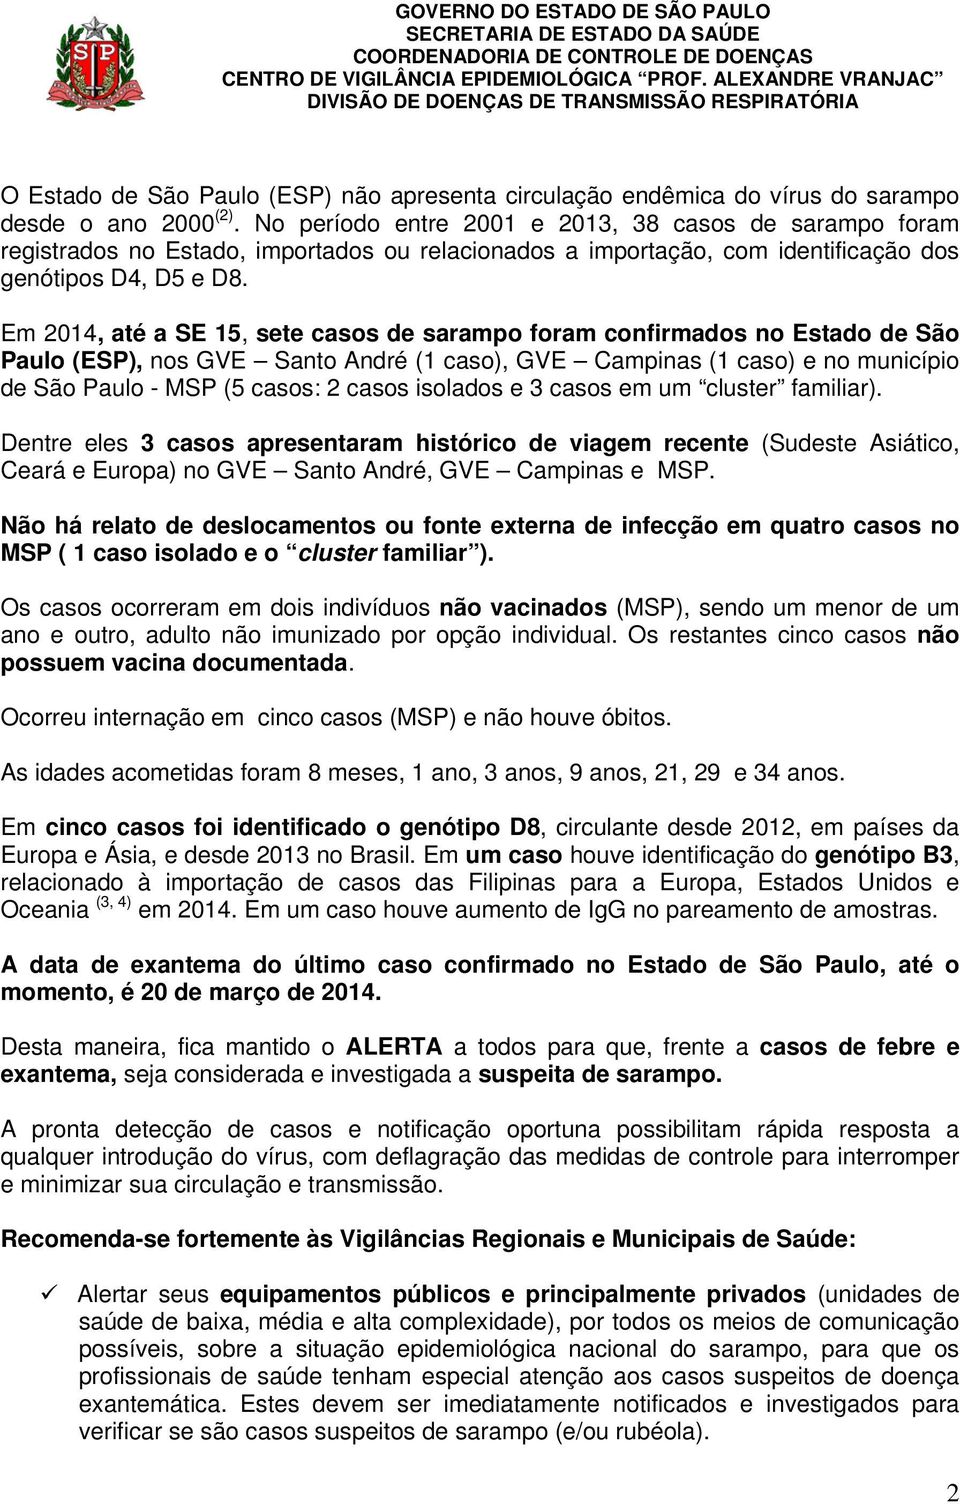 Em 2014, até a SE 15, sete casos de sarampo foram confirmados no Estado de São Paulo (ESP), nos GVE Santo André (1 caso), GVE Campinas (1 caso) e no município de São Paulo - MSP (5 casos: 2 casos